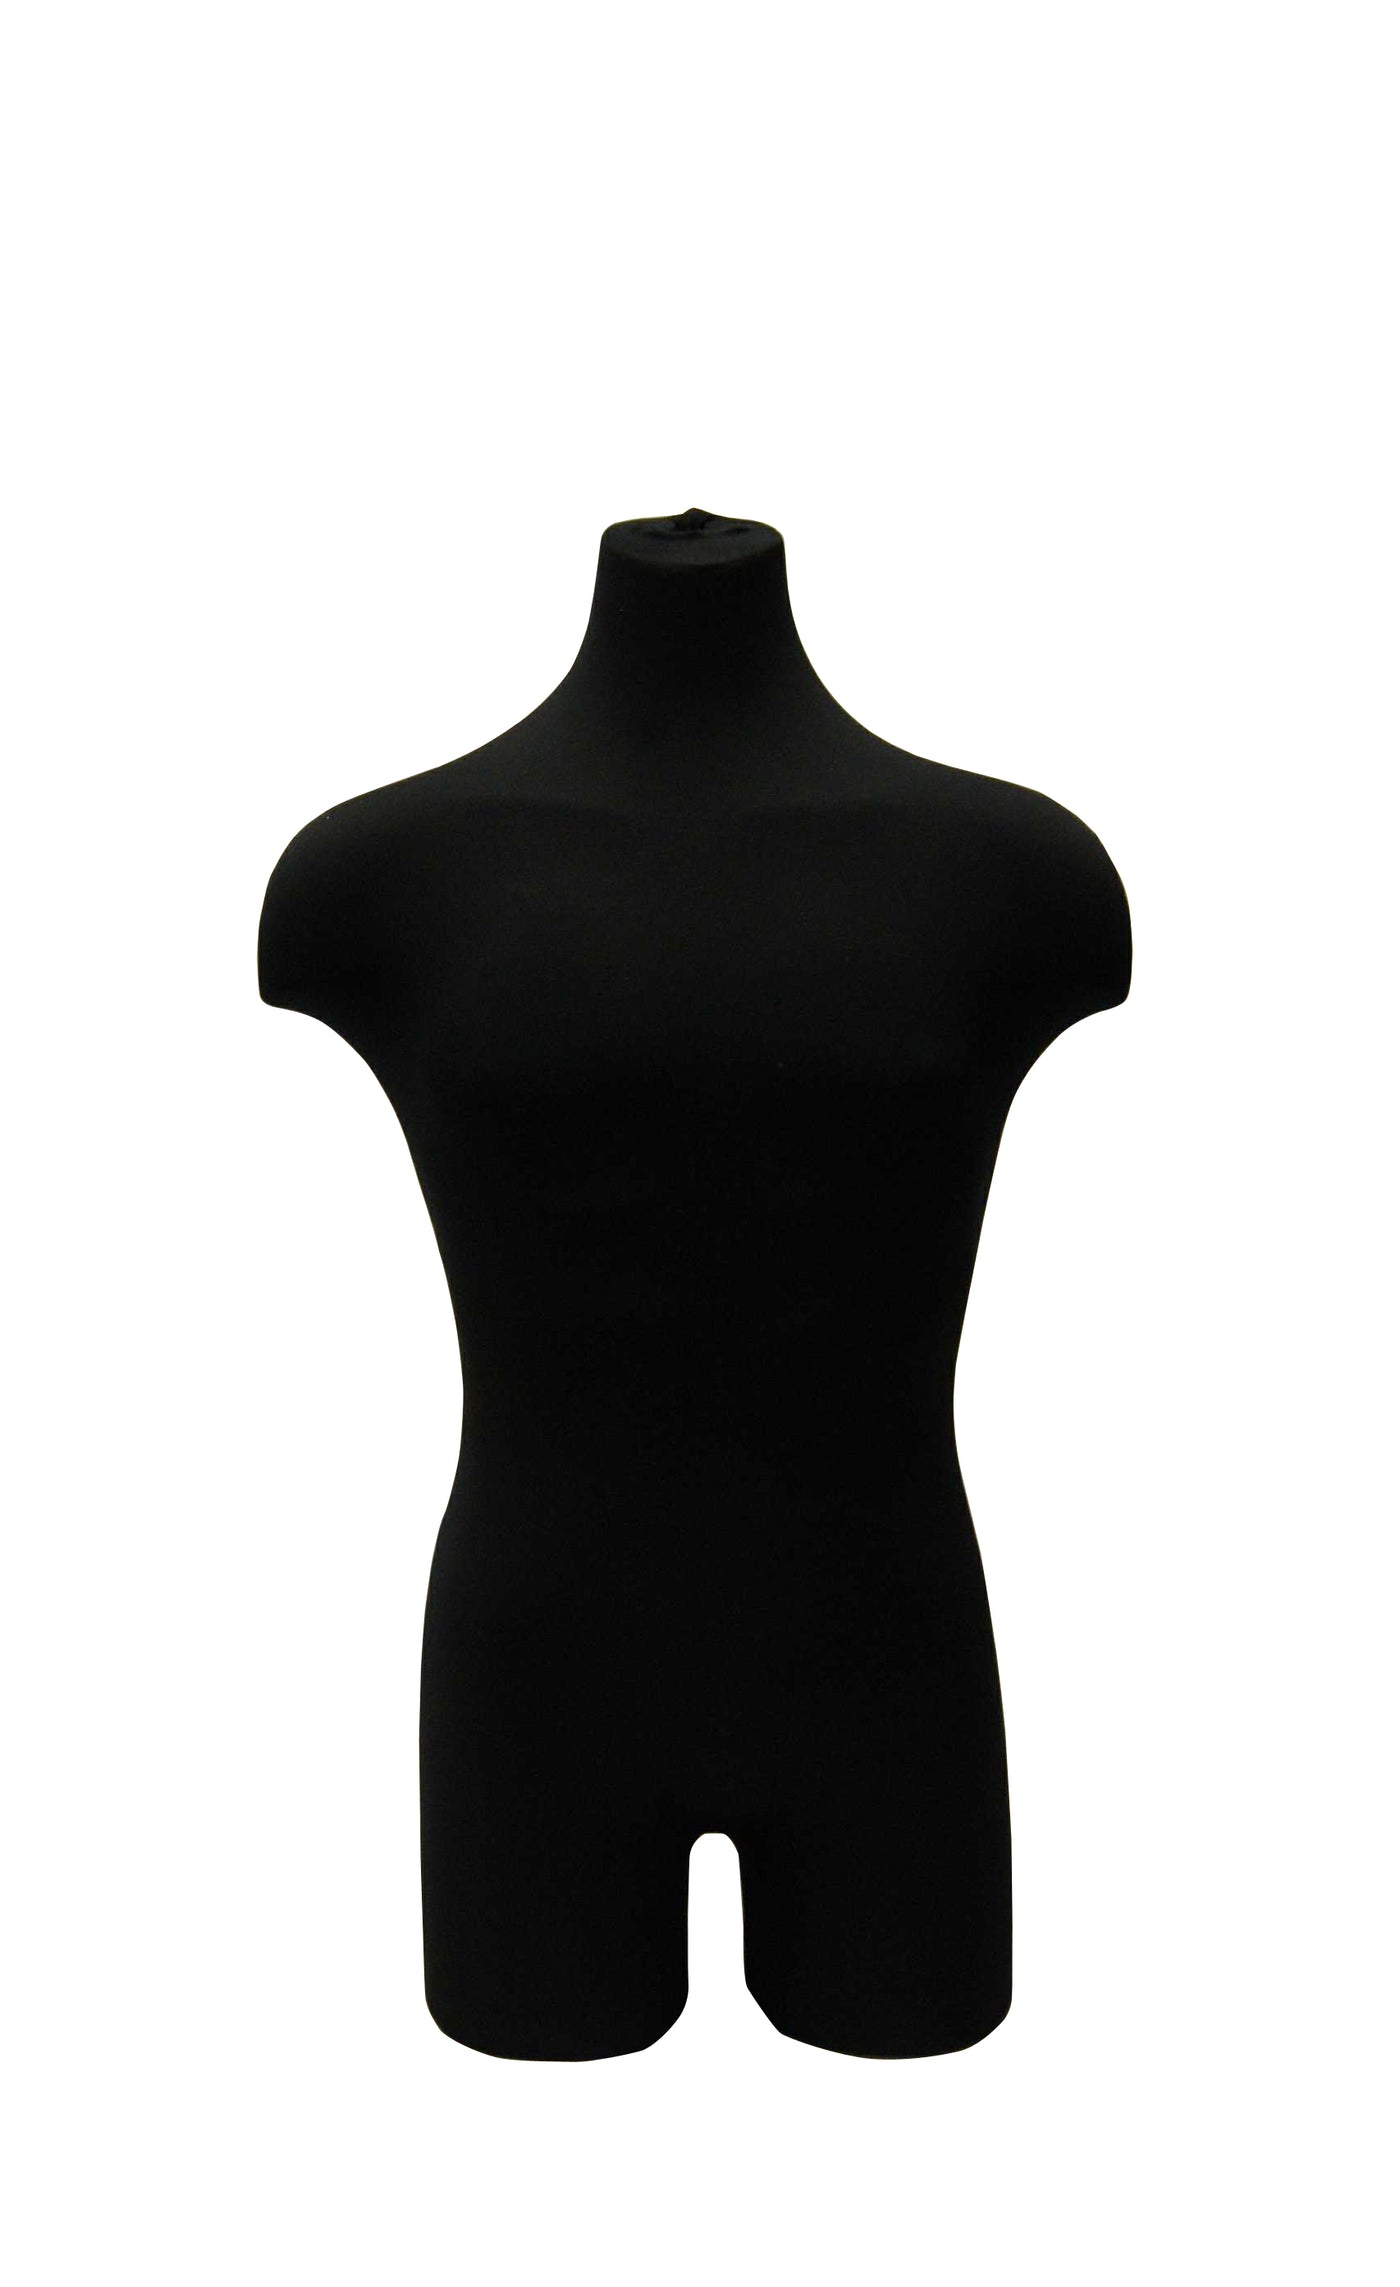 Black Male Mannequin Torso with Half Leg & Shoulders: Black Metal Wheeled Base